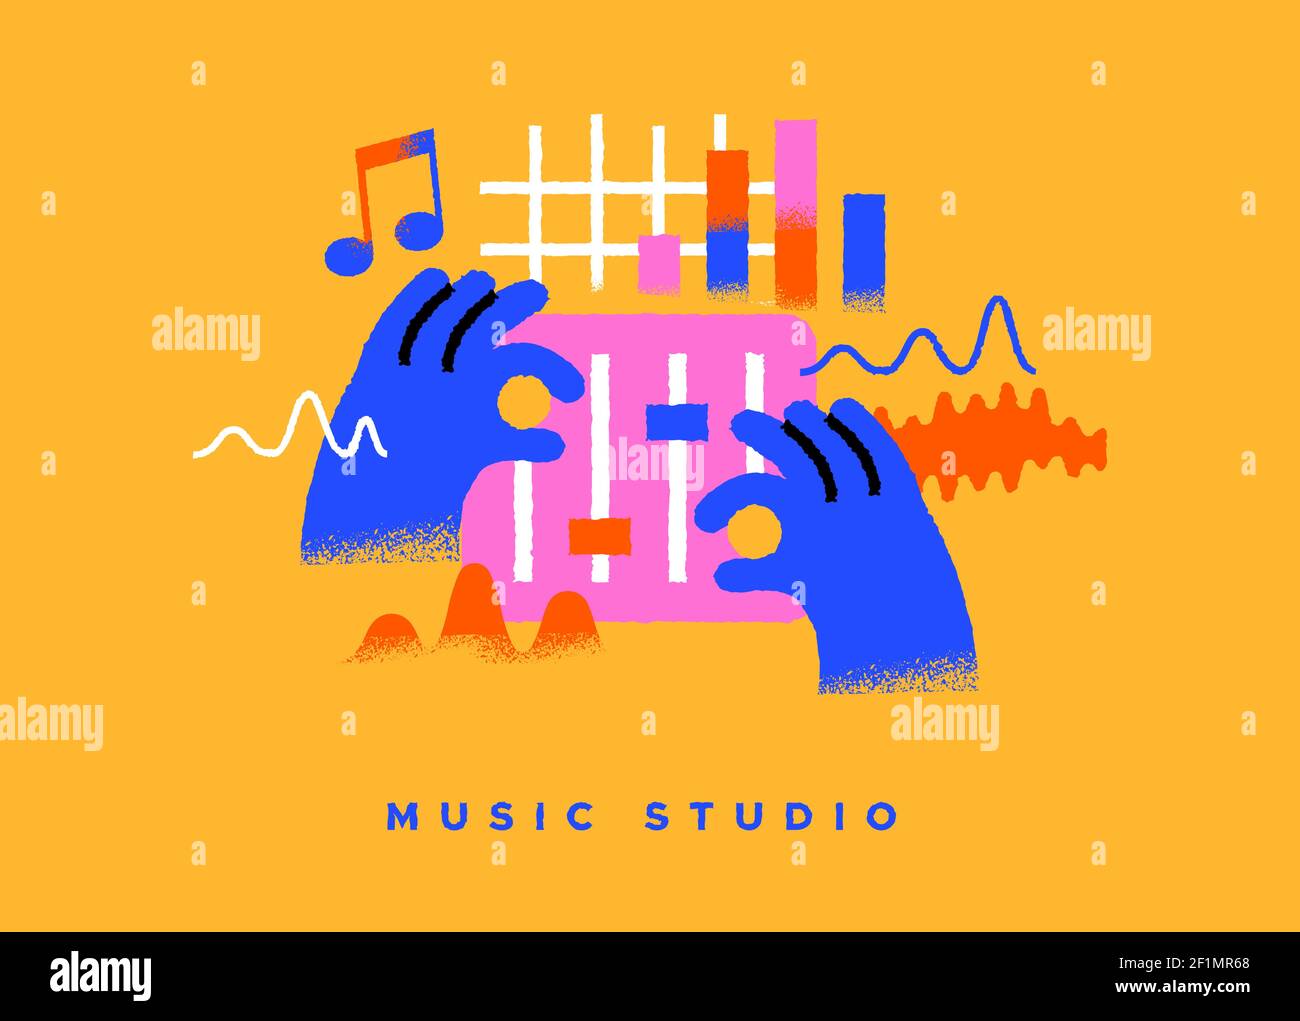 Musikstudio bunte Illustration auf isoliertem Hintergrund. Professionelle Sound-Steuerung, dj oder Audio-Volumen-Mixing-Konzept in trendigen handgezeichneten Cartoon Stock Vektor